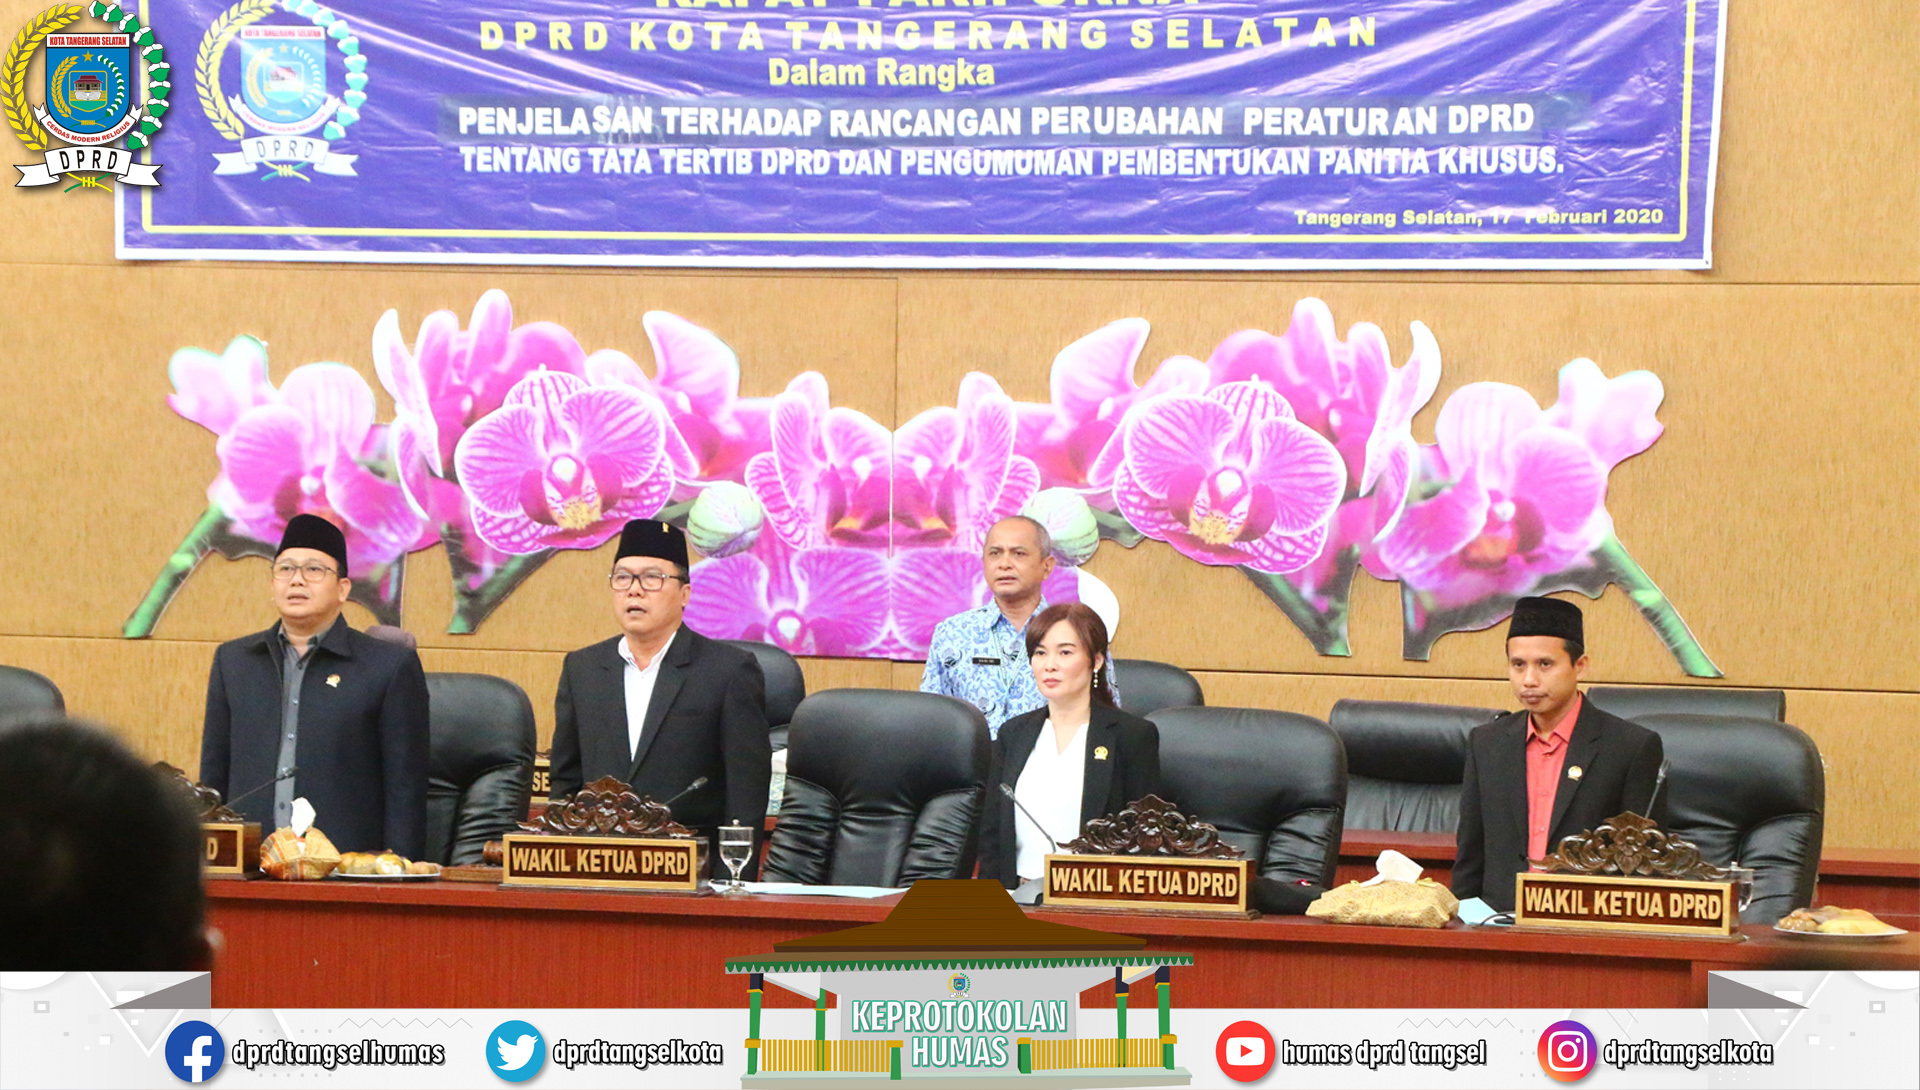 DPRD Kota Tangerang Selatan gelar Rapat Paripurna dengan 2 Agenda